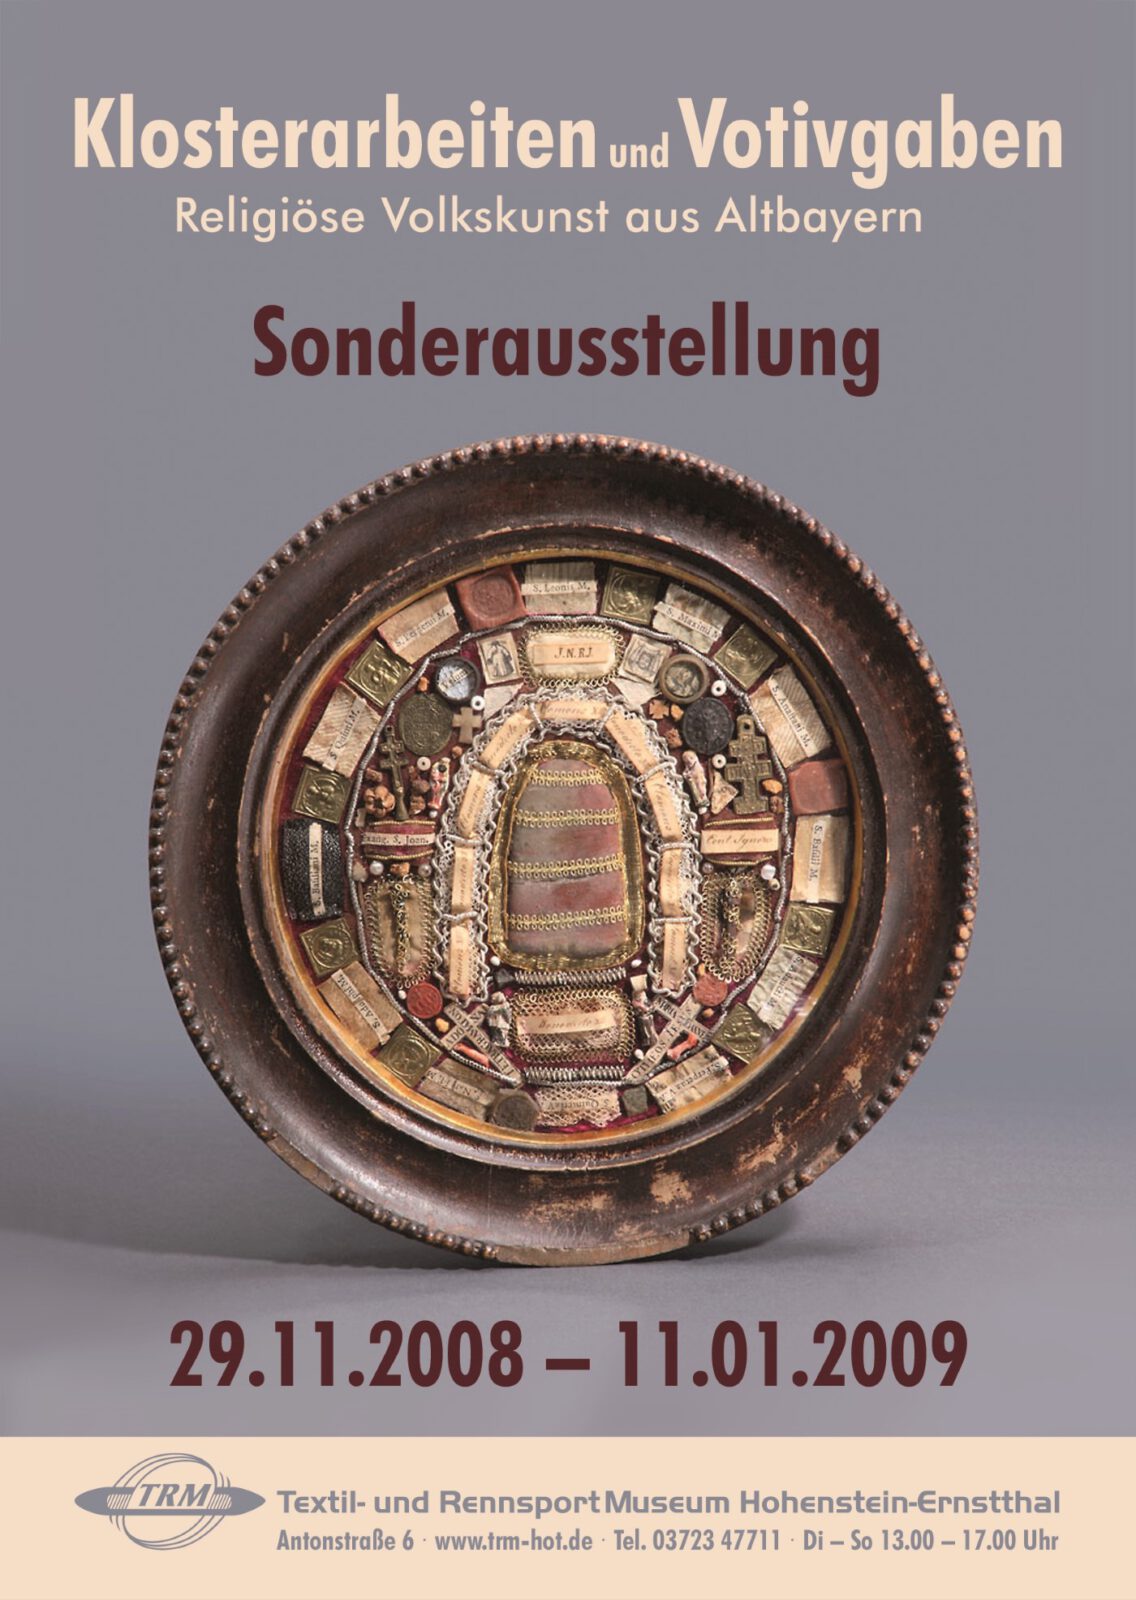 Plakat für die Sonderausstellung Religiöse Volkskunst aus Altbayern, 2008. Sie wurde im Textil- und Rennsportmuseum Hohenstein-Ernstthal gezeigt.